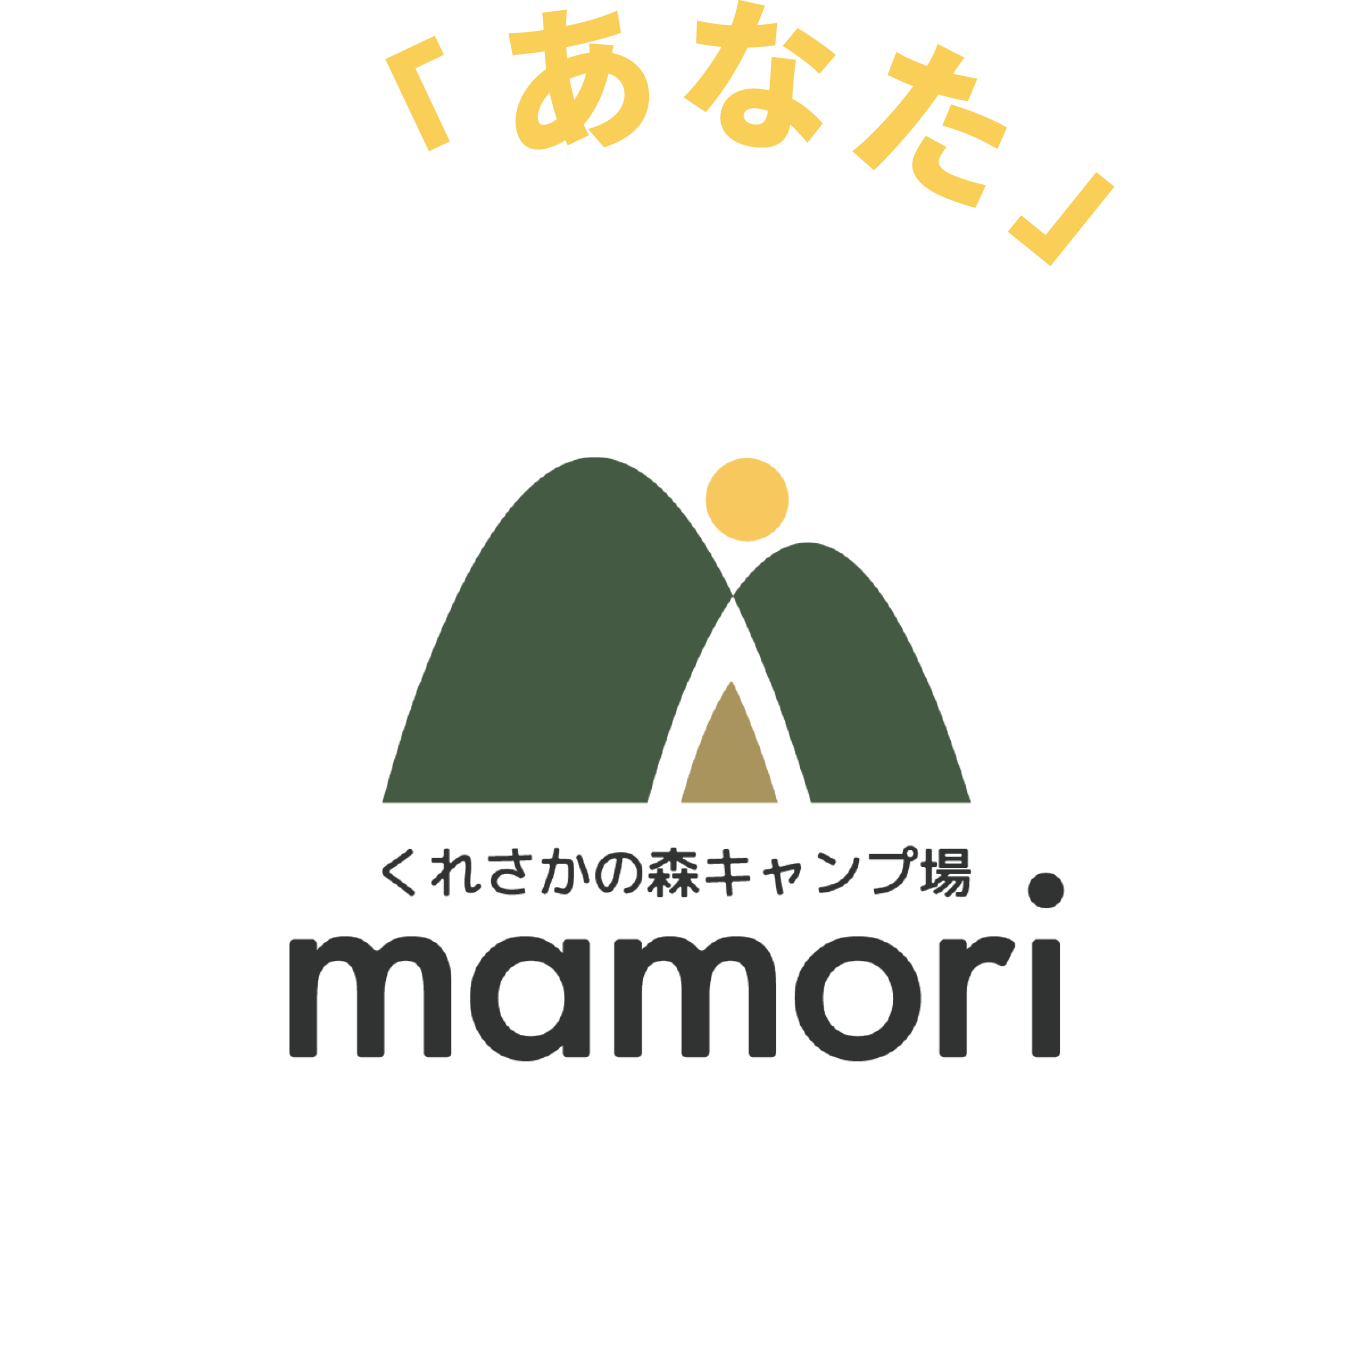 くれさかの森キャンプ場 mamori